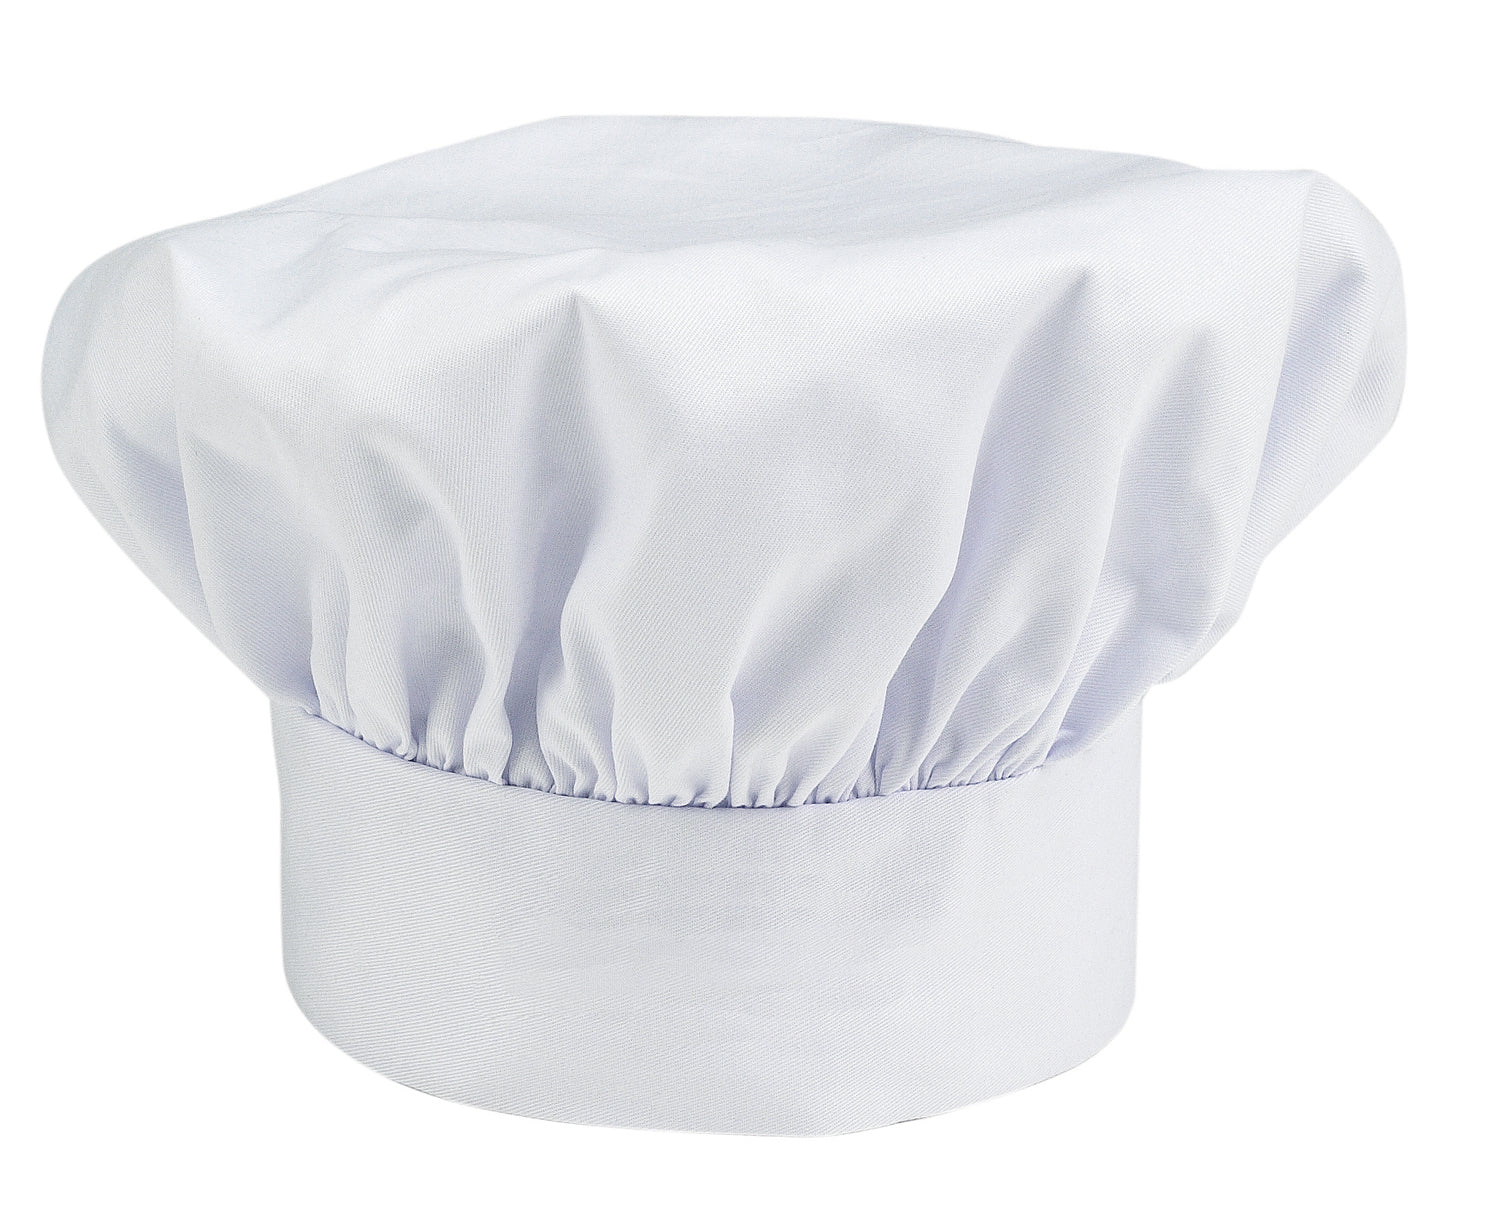 Jr. Executive Chef Hat